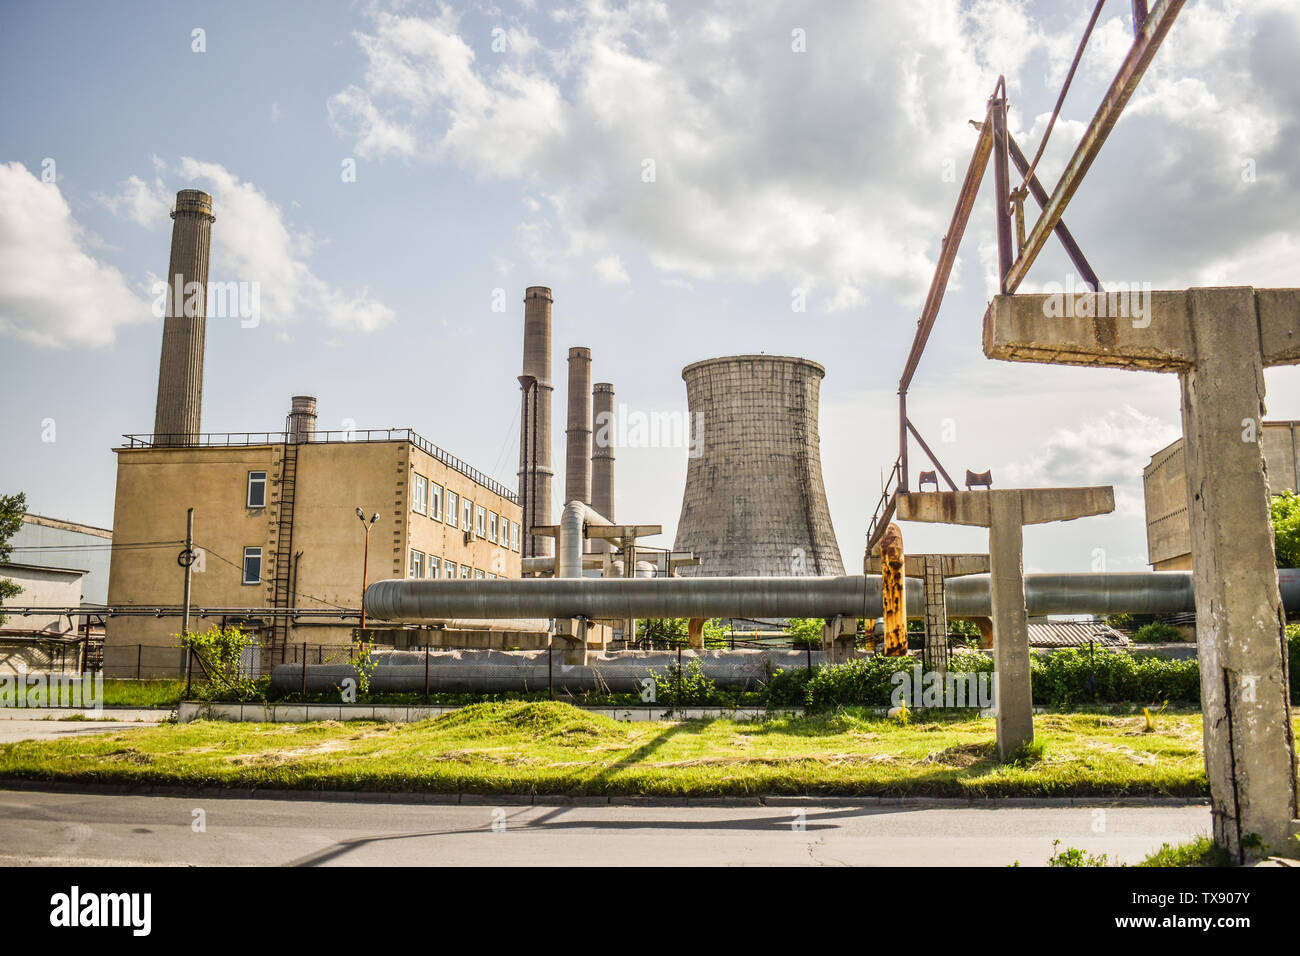 Ansicht des alten Kraftwerks mit großen konkreten Öfen. Gefallenen chemische kommunistische Industrie. Stockfoto